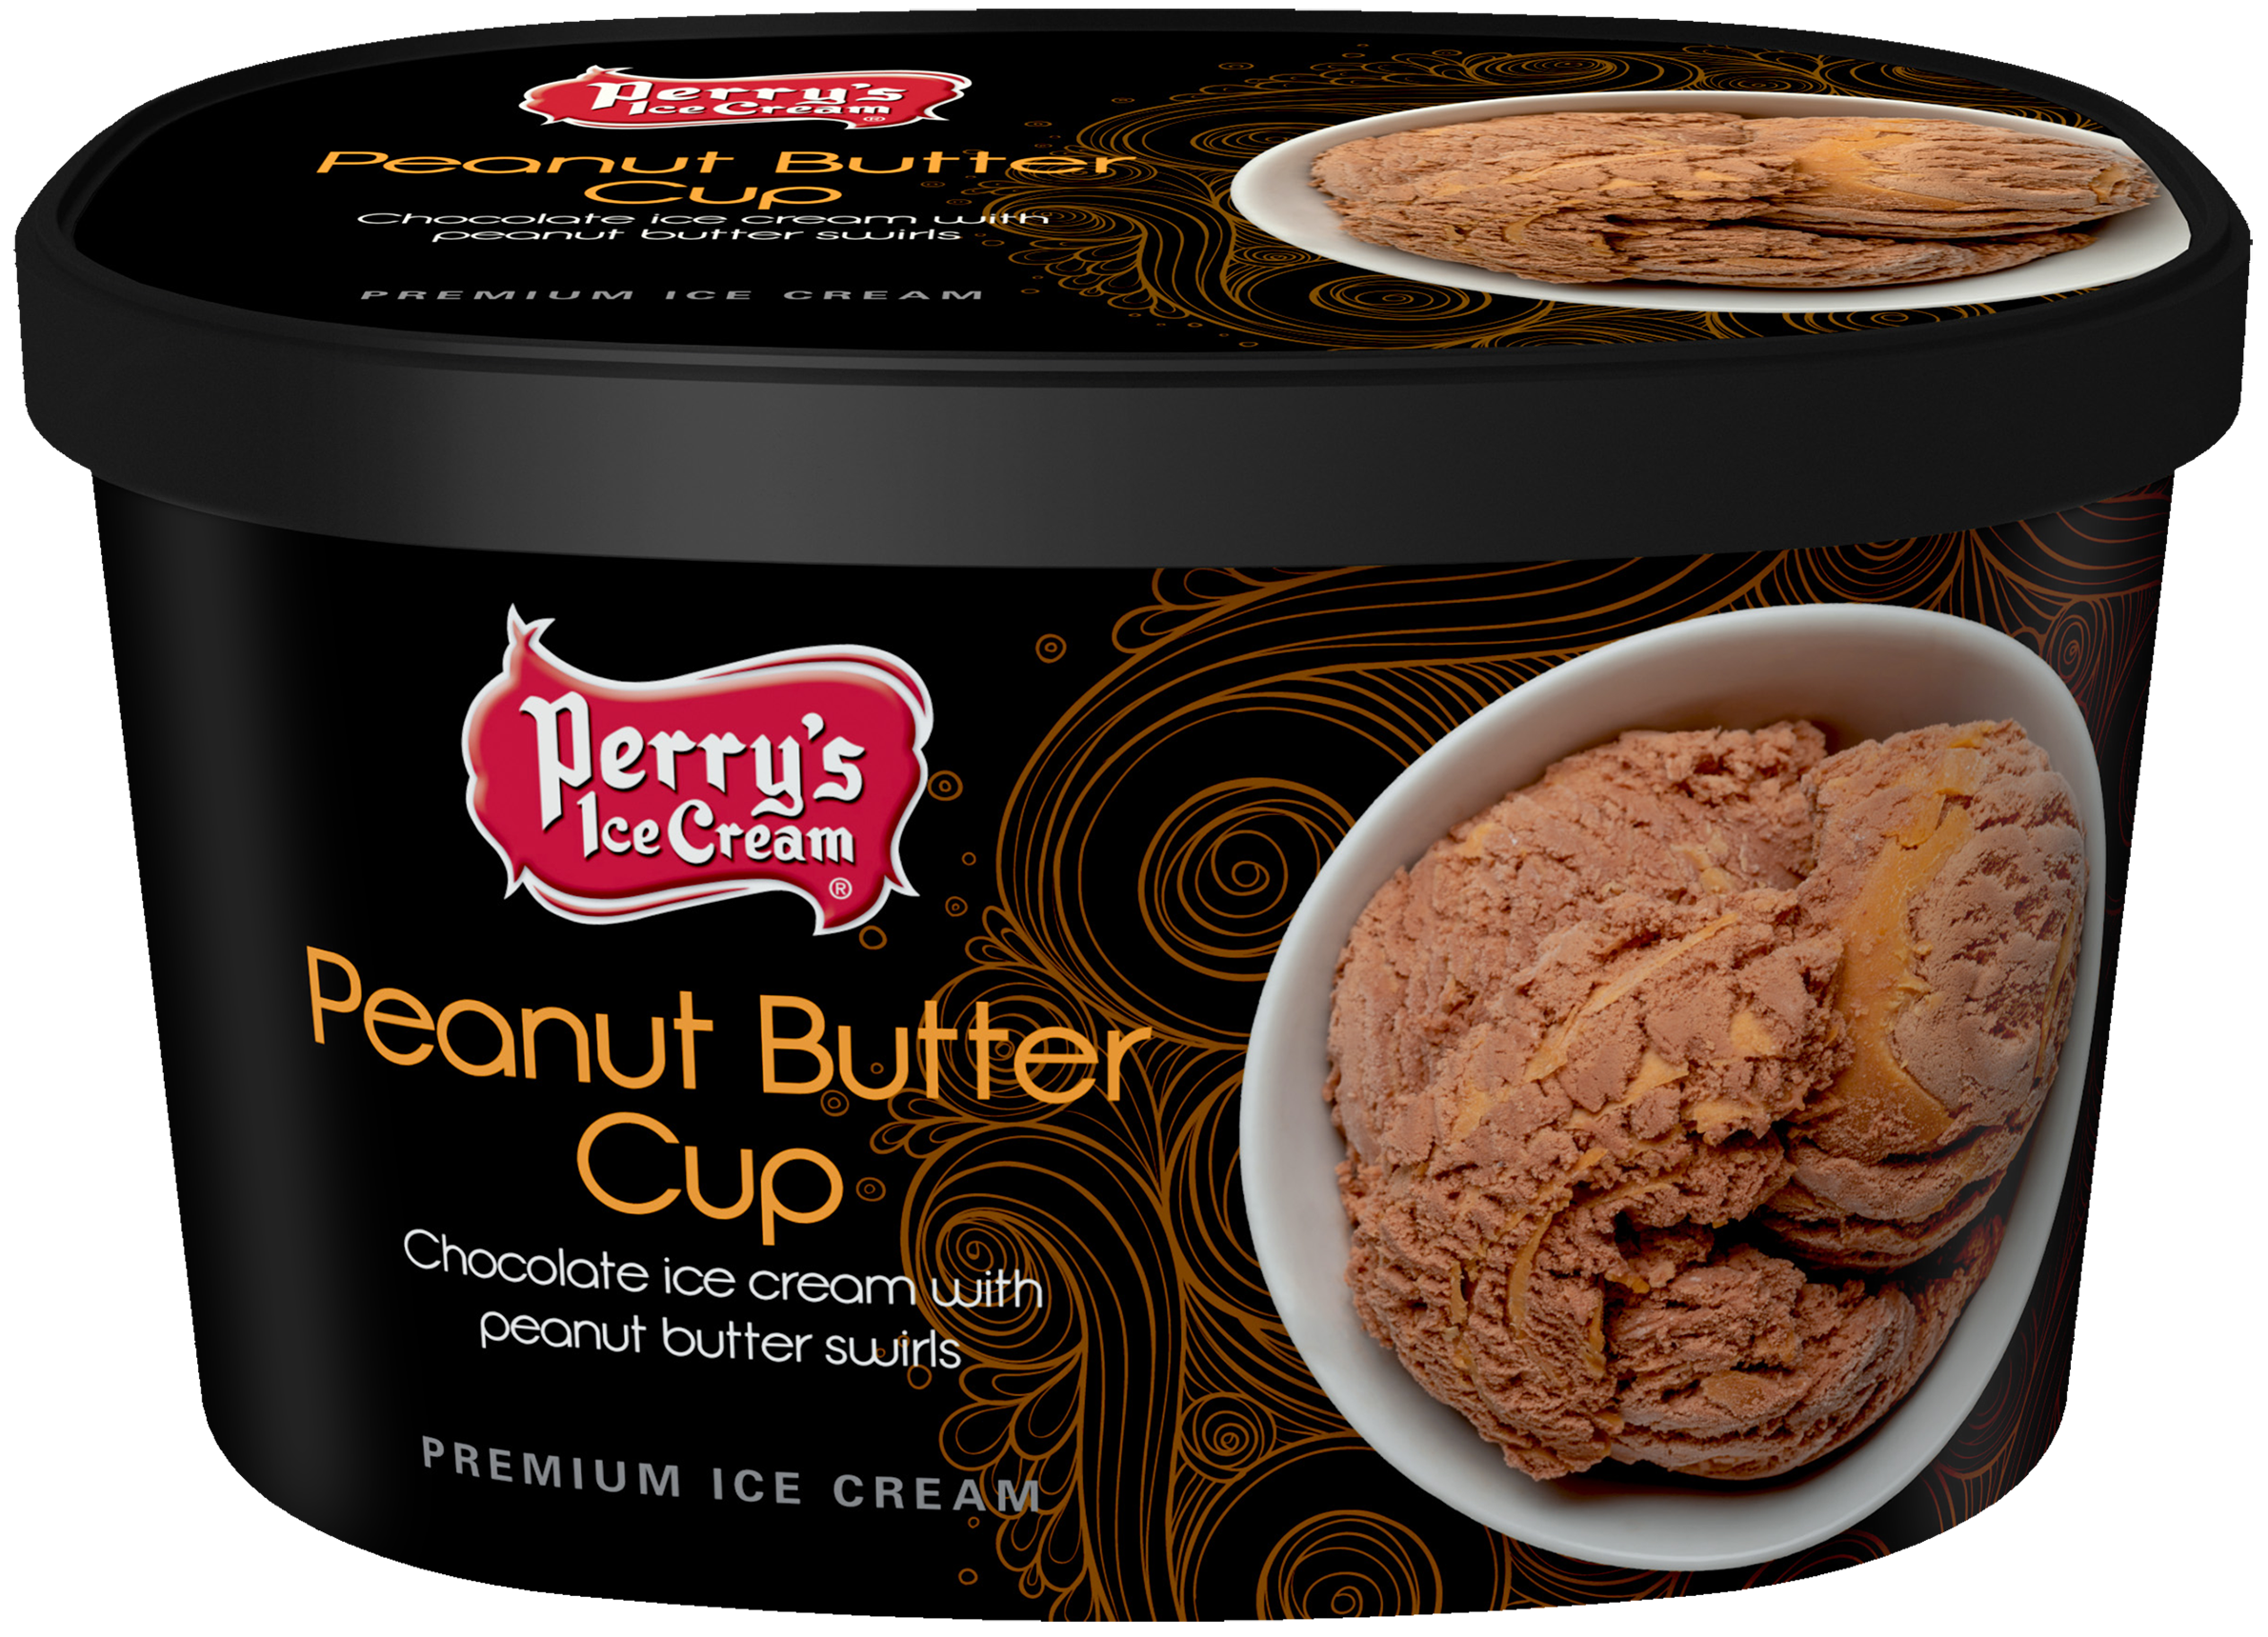 Peanut Butter Cup ice cream